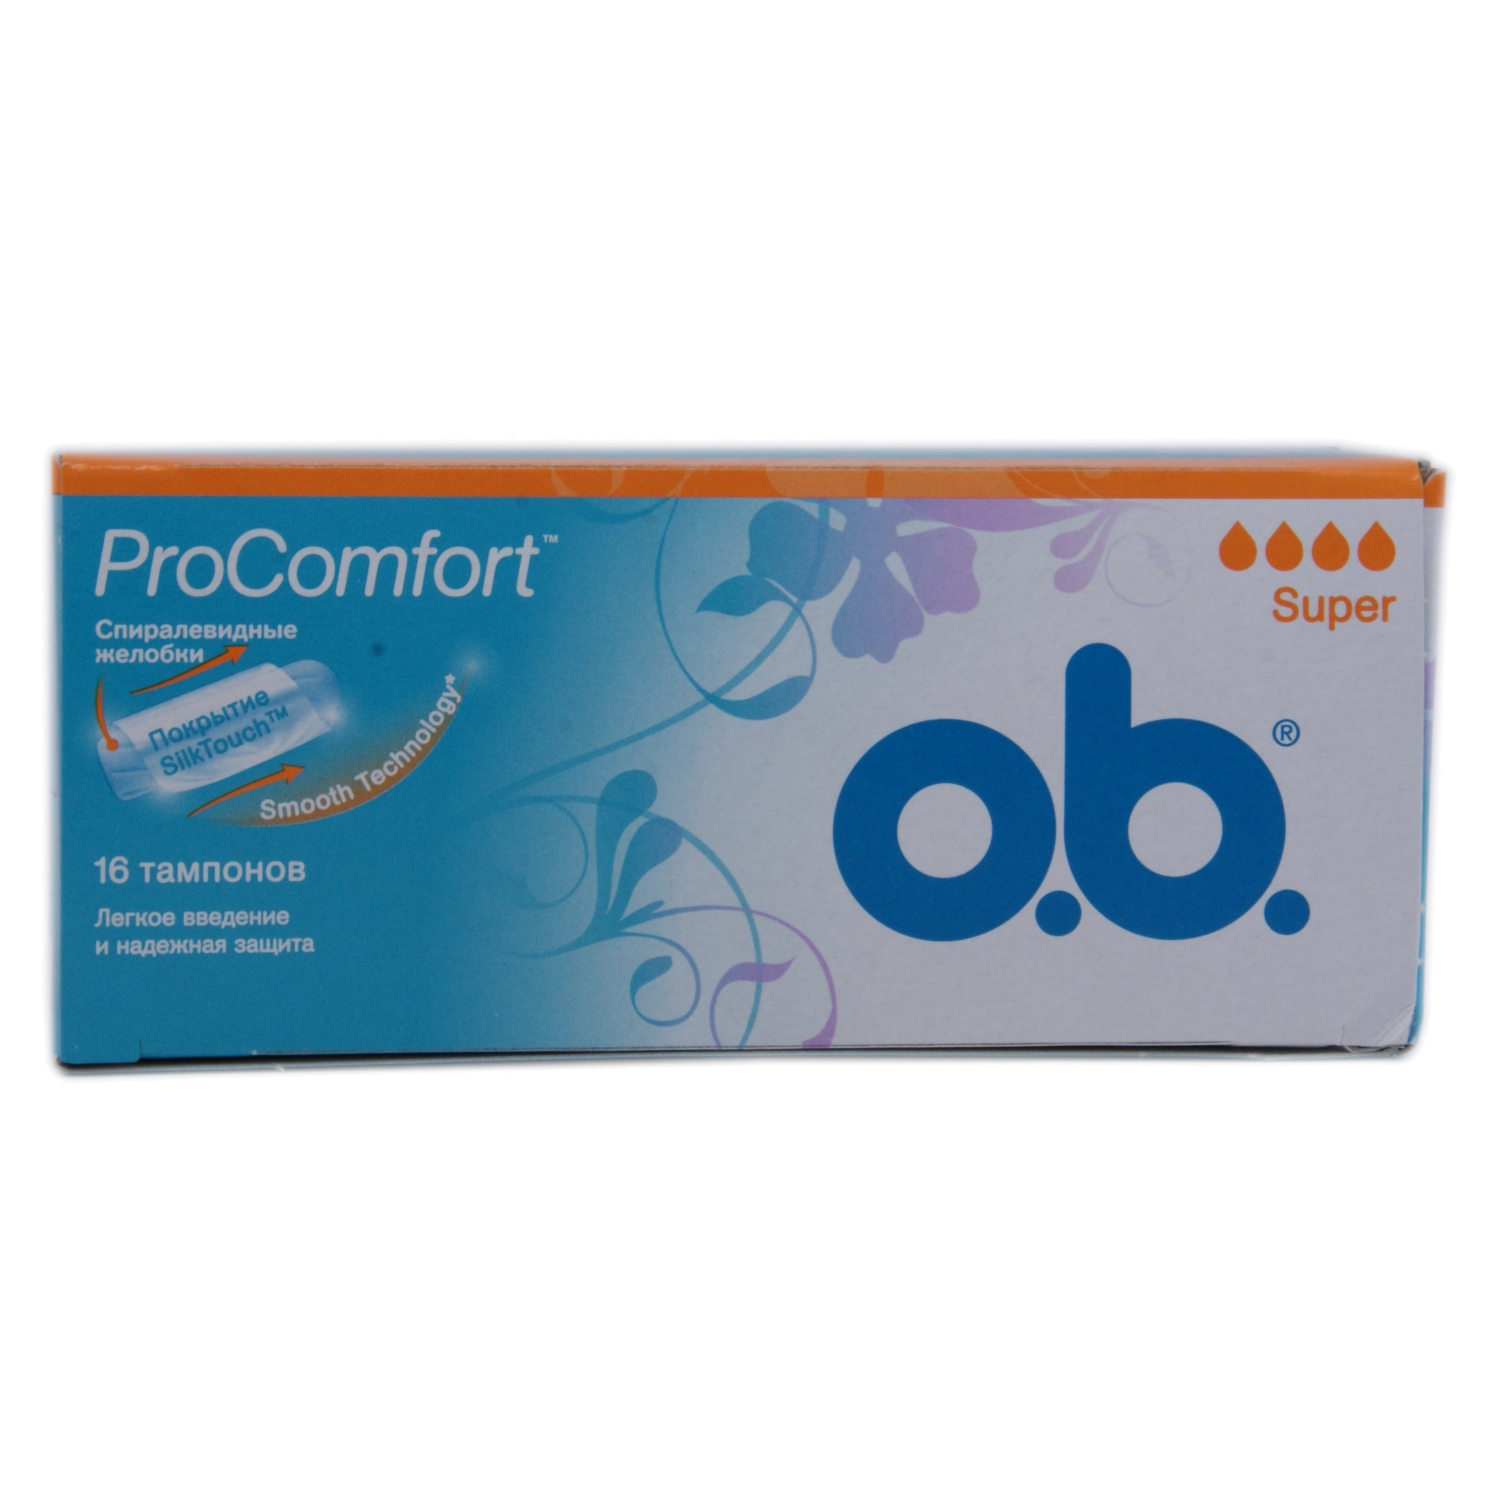 O.B. Pro Comfort Super N16